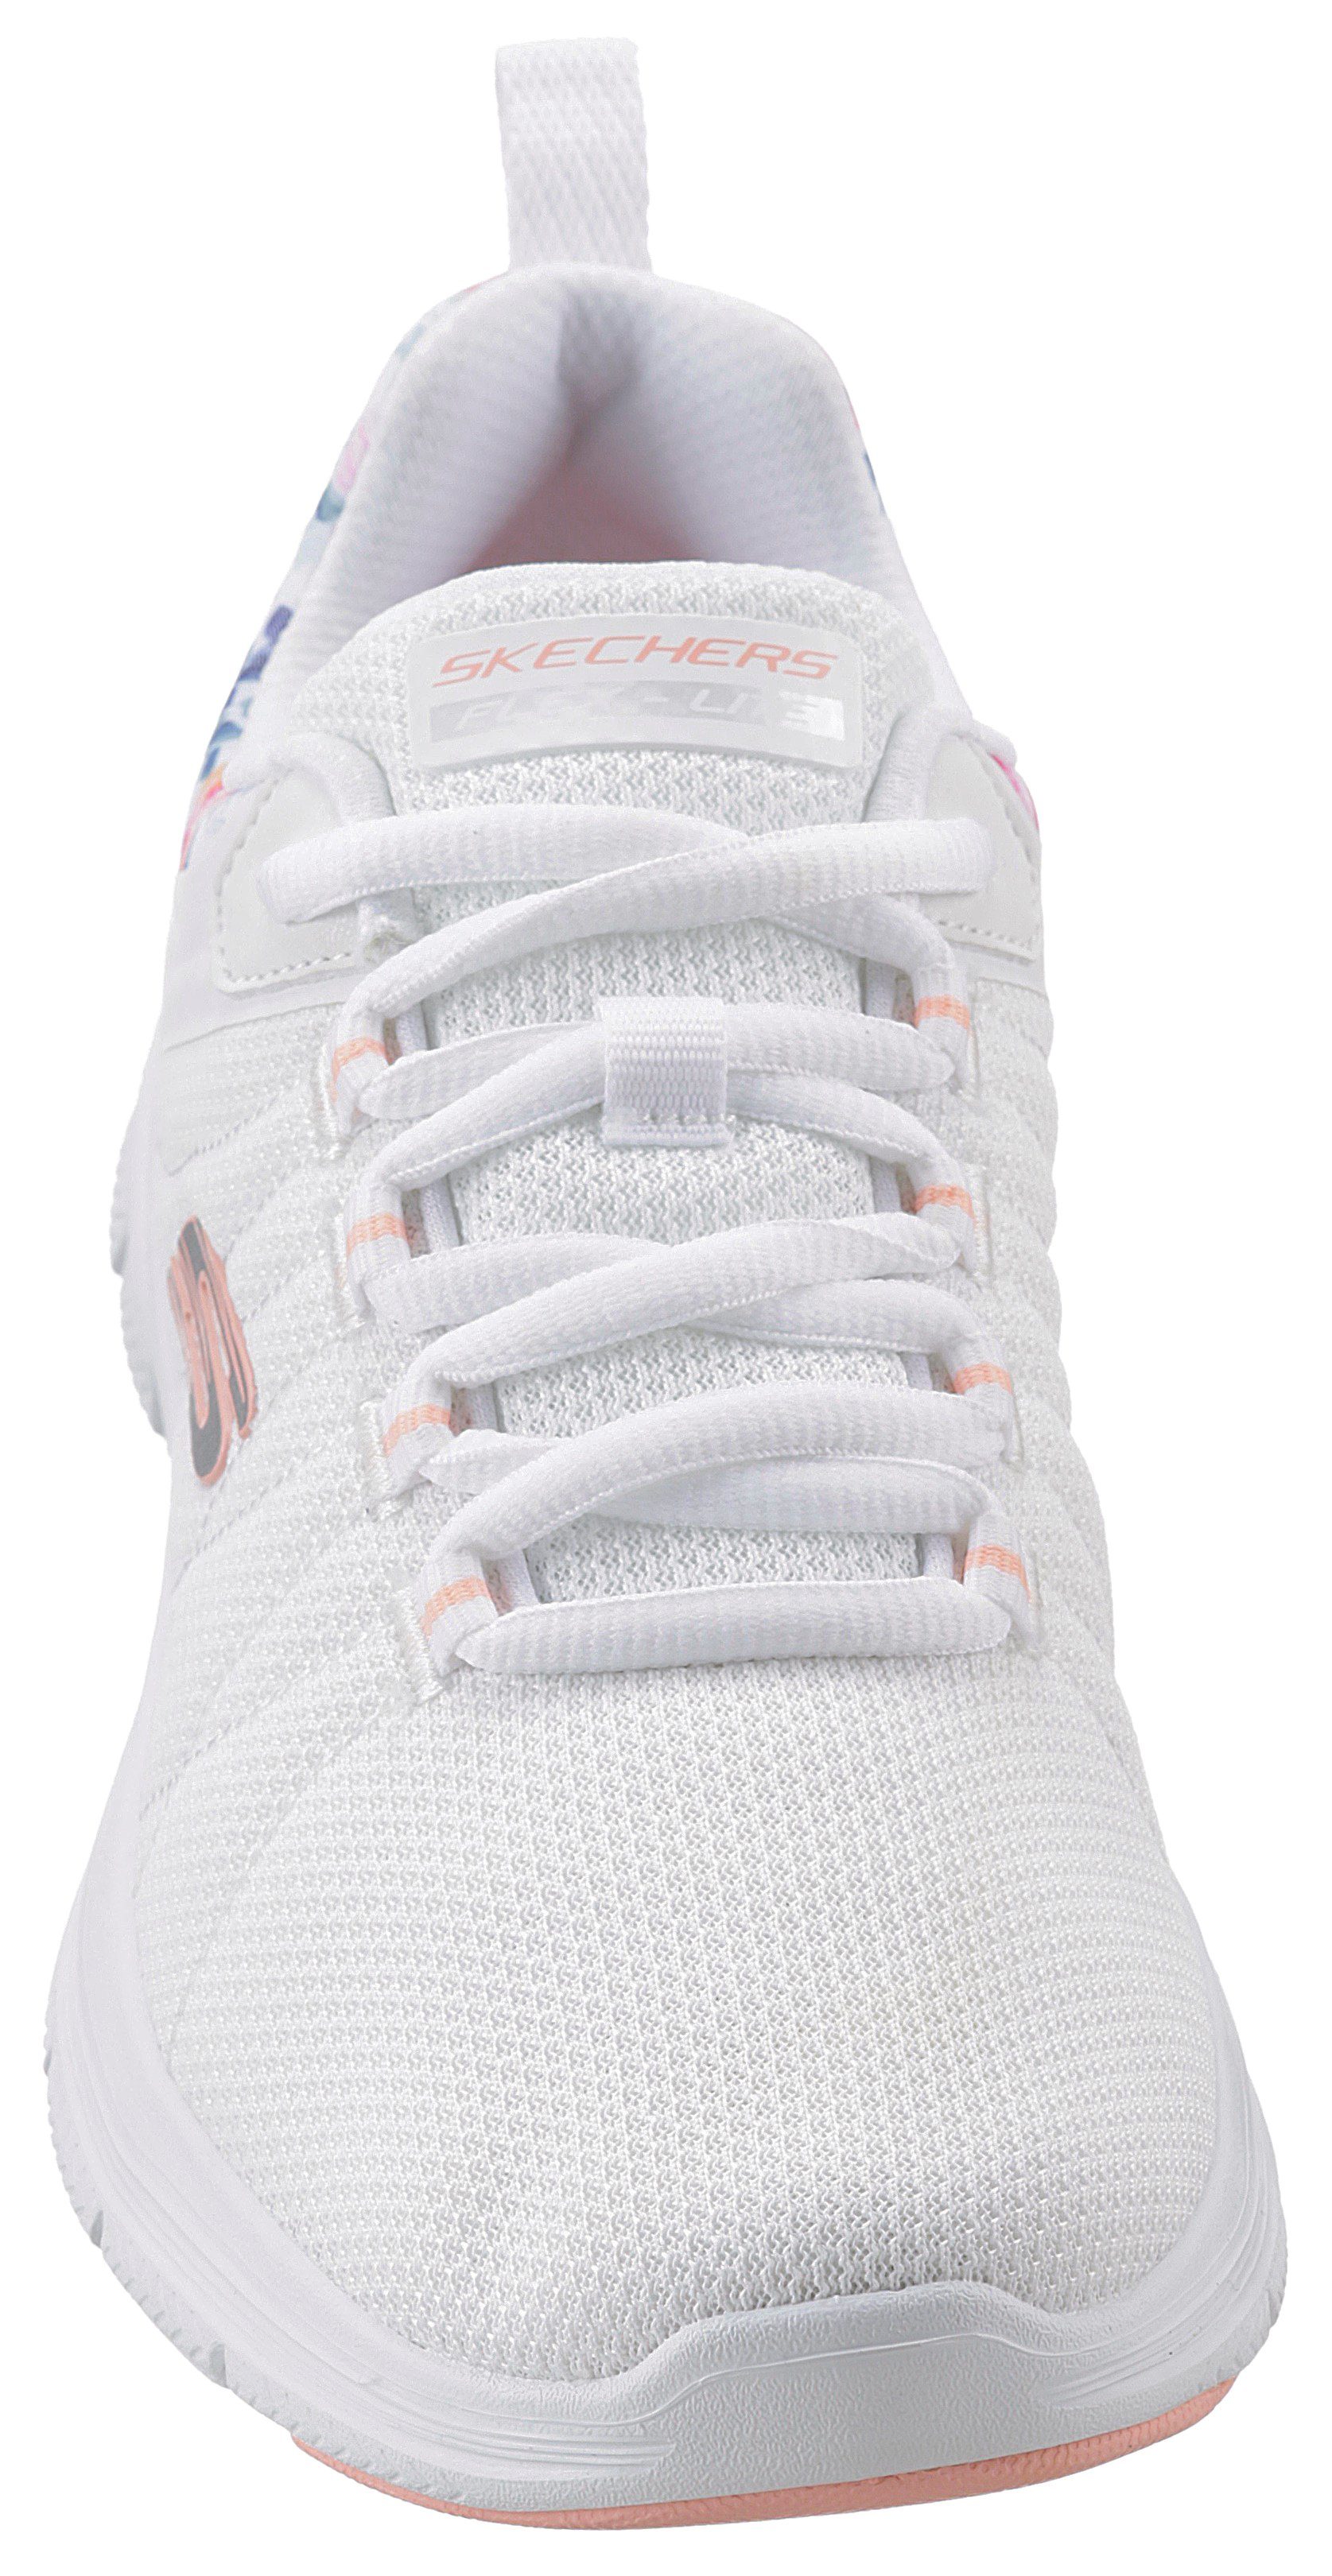 IT an Blumenprint FLEX mit Sneaker weiß-kombiniert APPEAL Skechers BLOSSOM Ferse 4.0 LET der